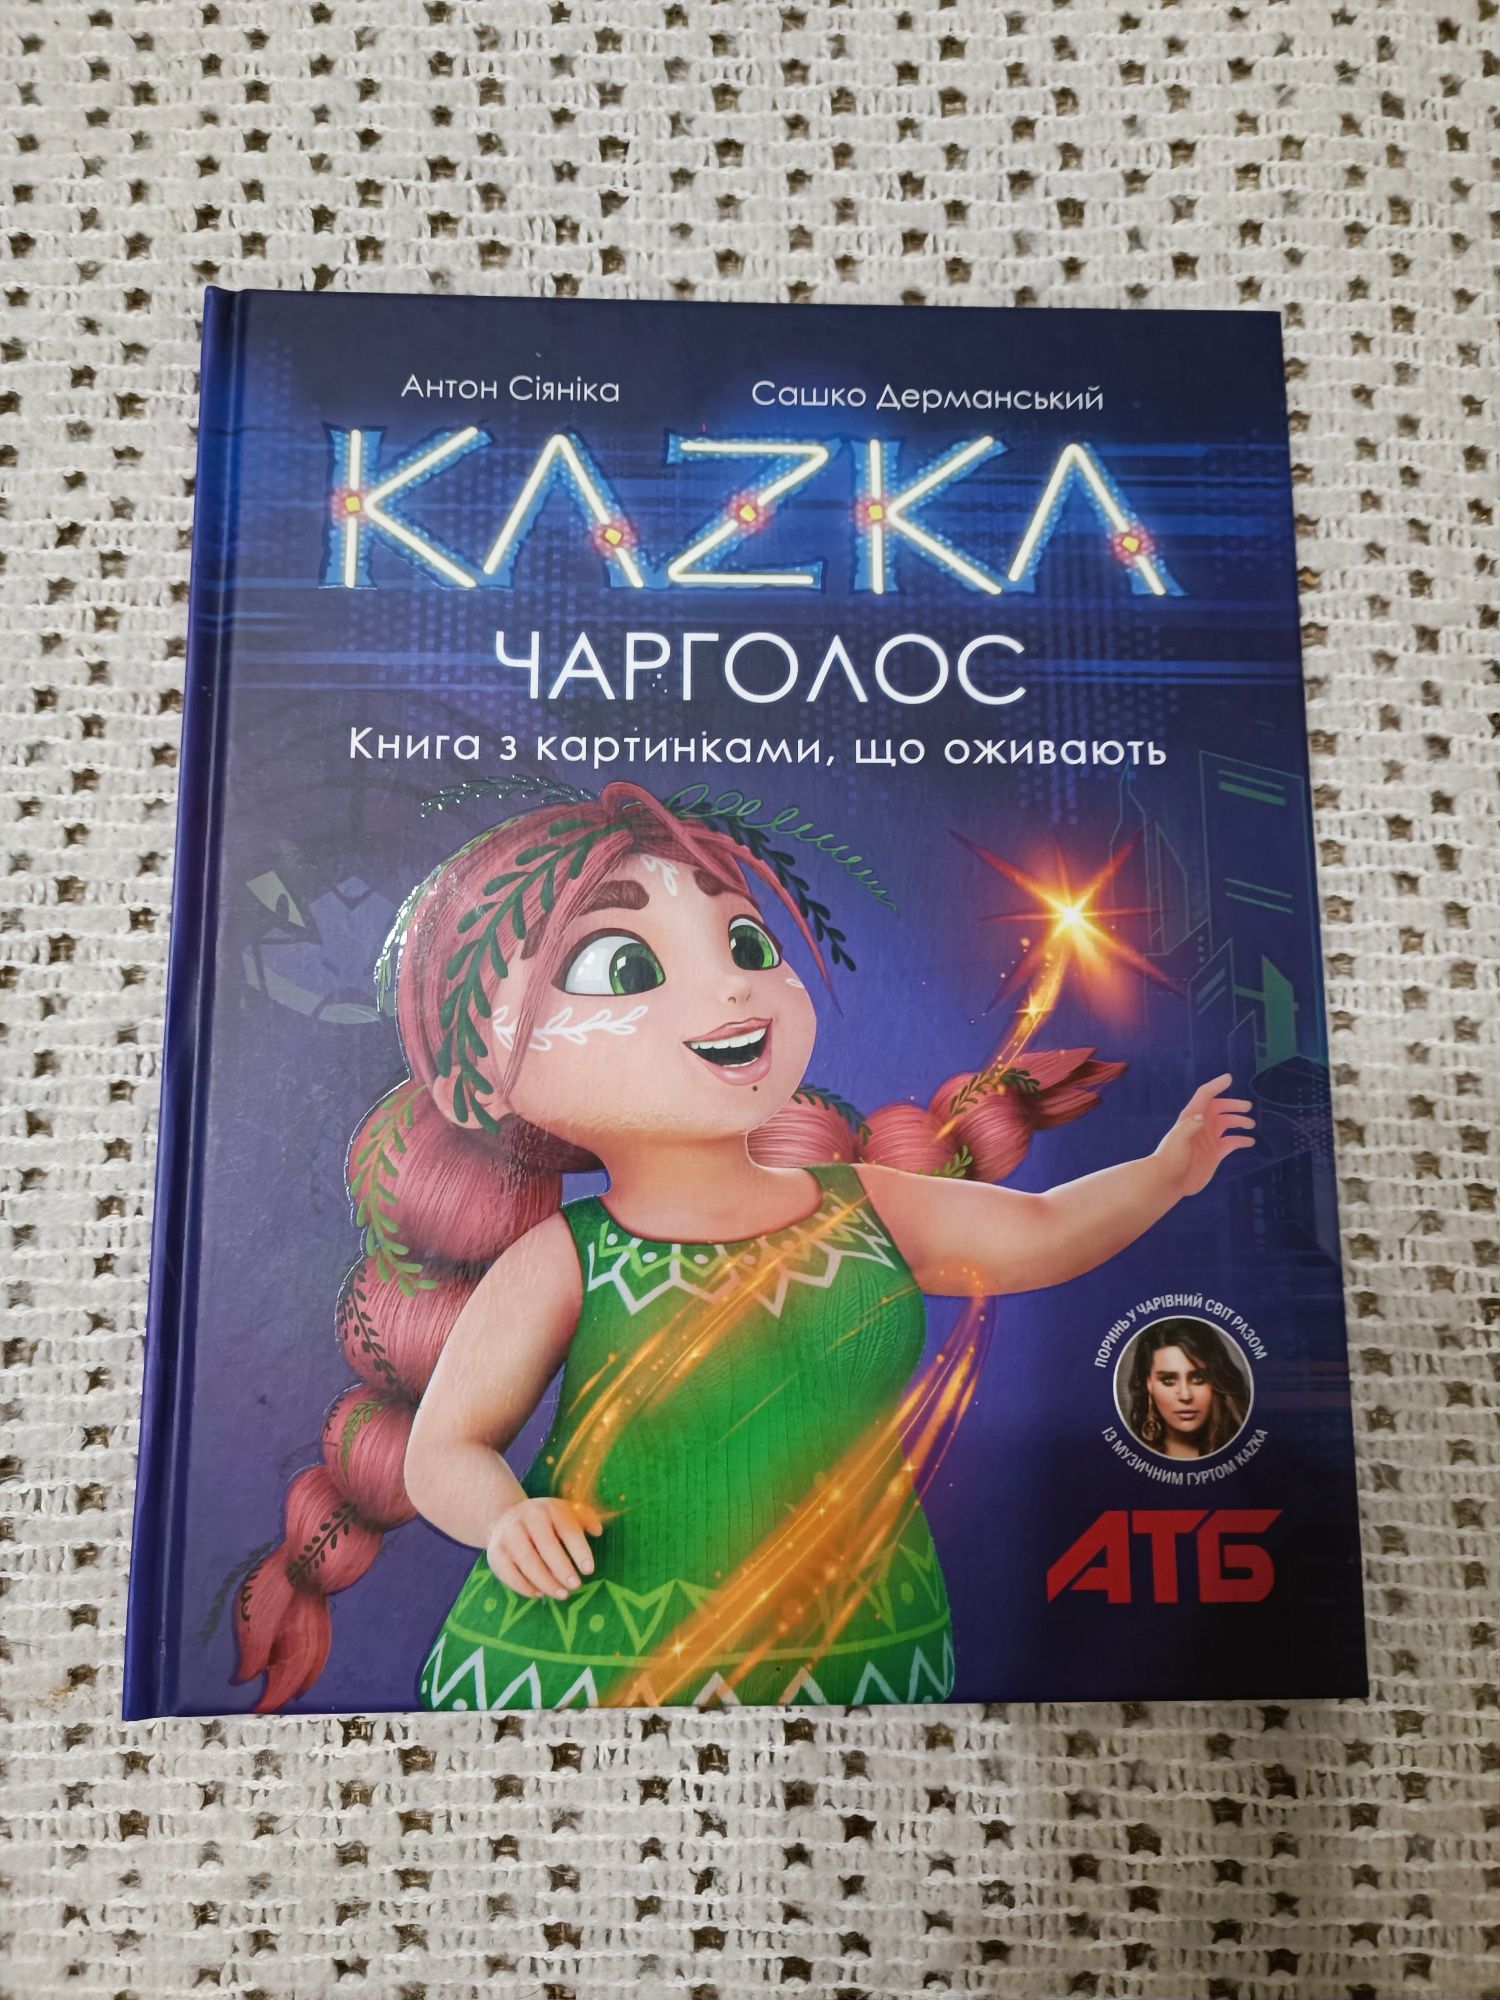 Дитяча книжка з картинками, що оживають, Kazka